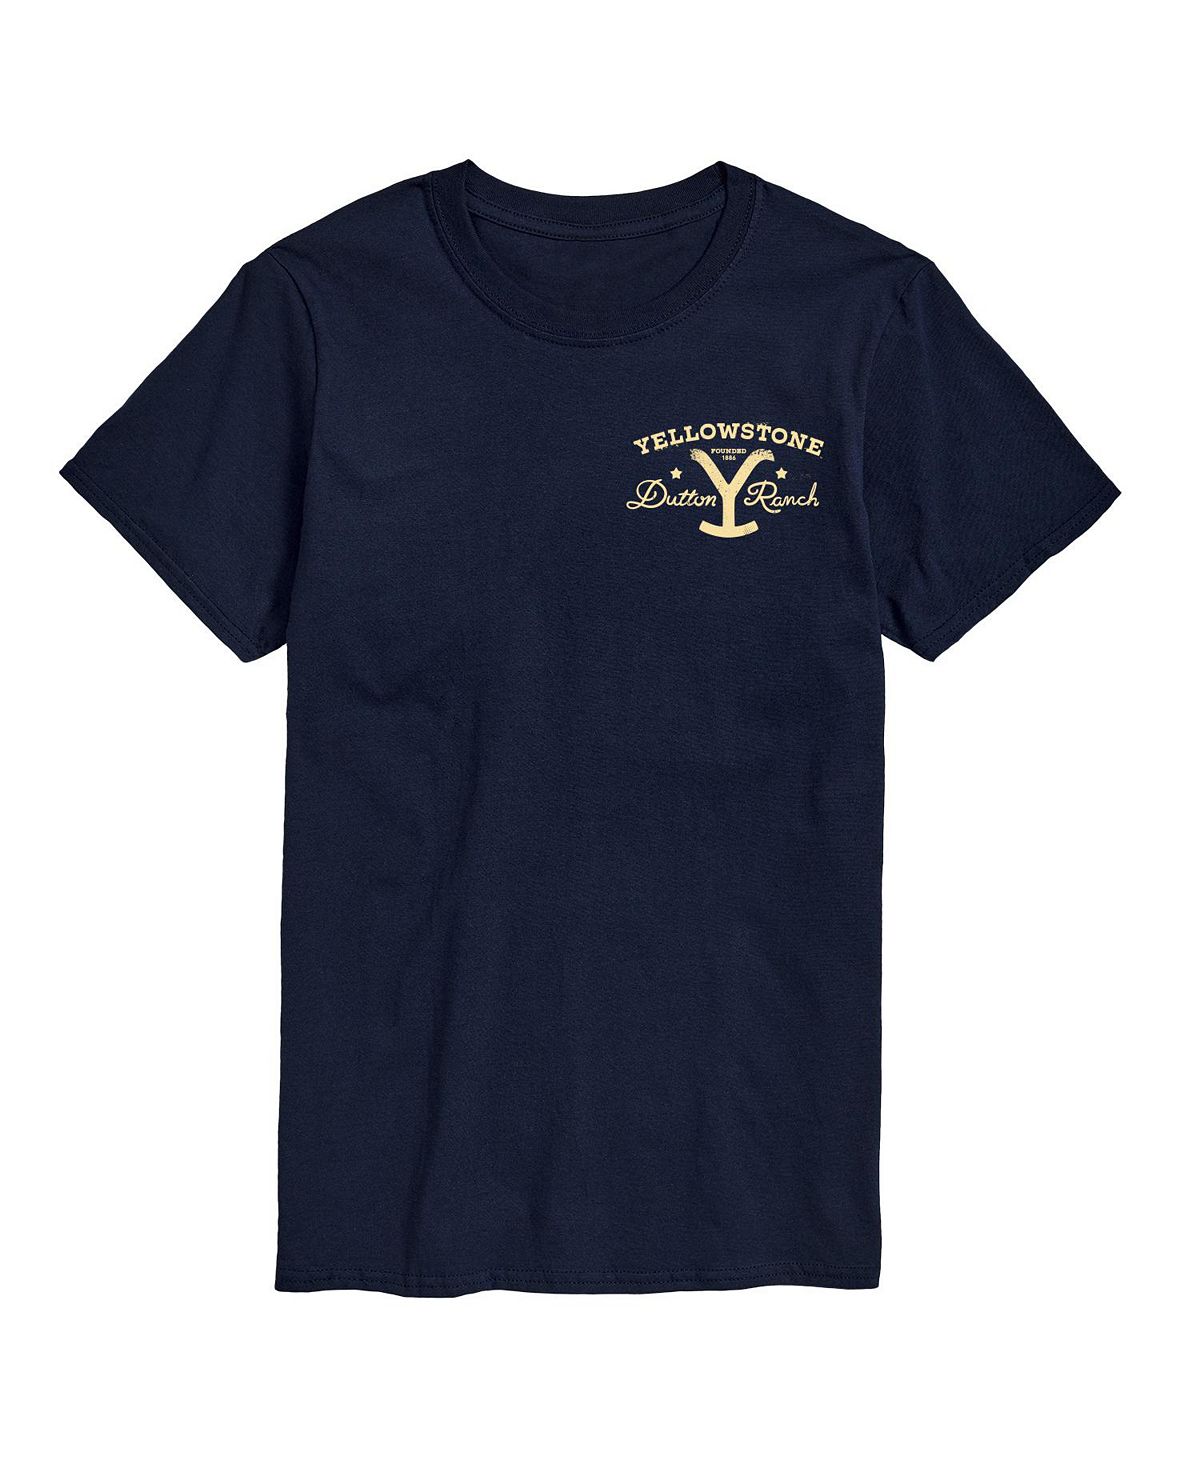 Мужская футболка с коротким рукавом «Йеллоустоун» AIRWAVES мужская многозадачная футболка с коротким рукавом airwaves серый